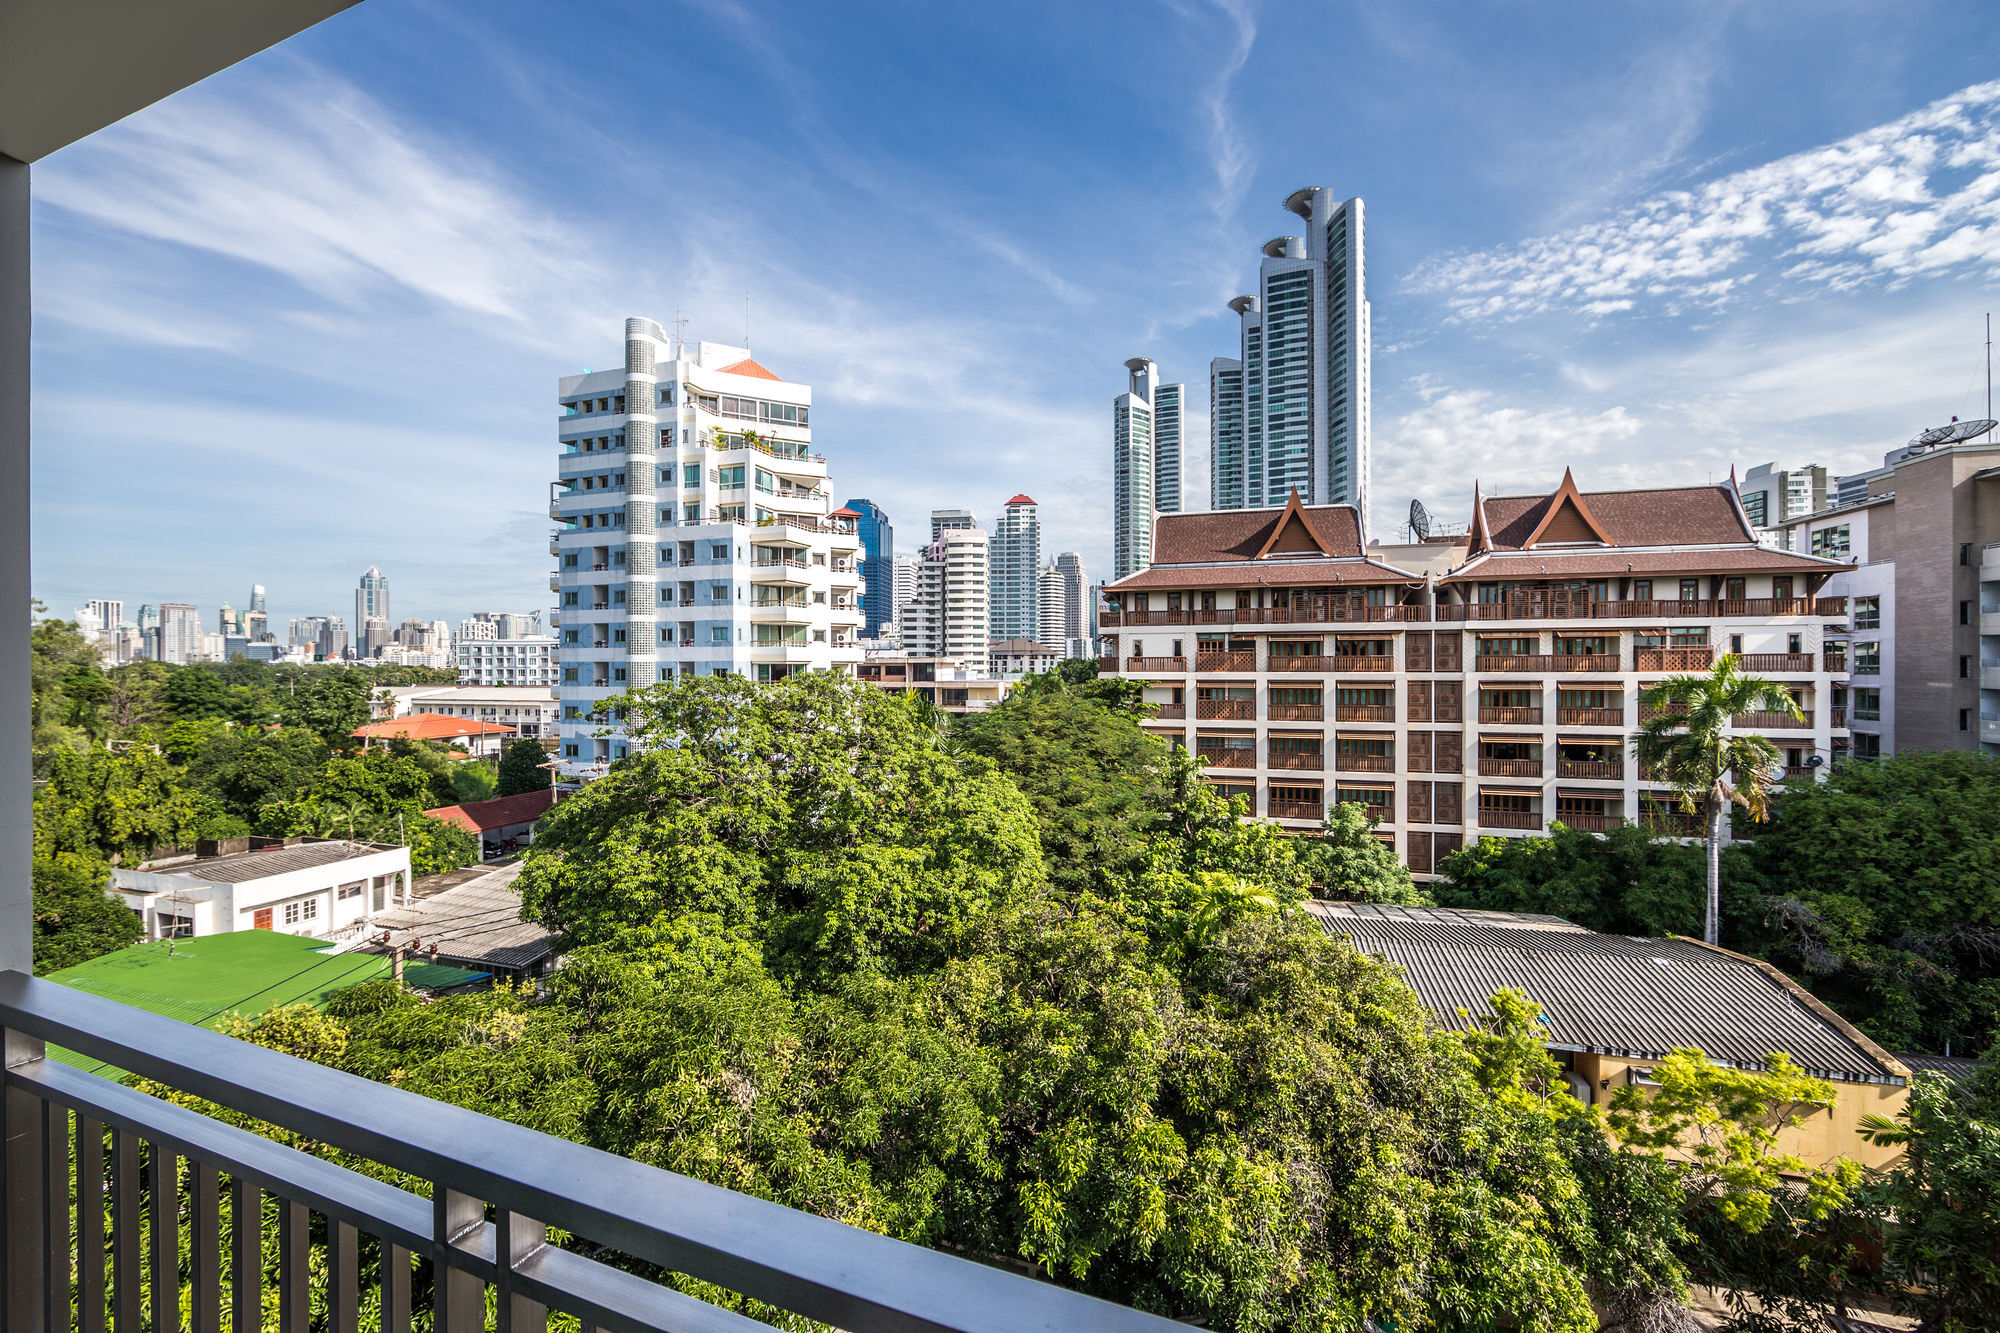 방콕 라이크 수쿰빗 22 아파트 호텔 외부 사진